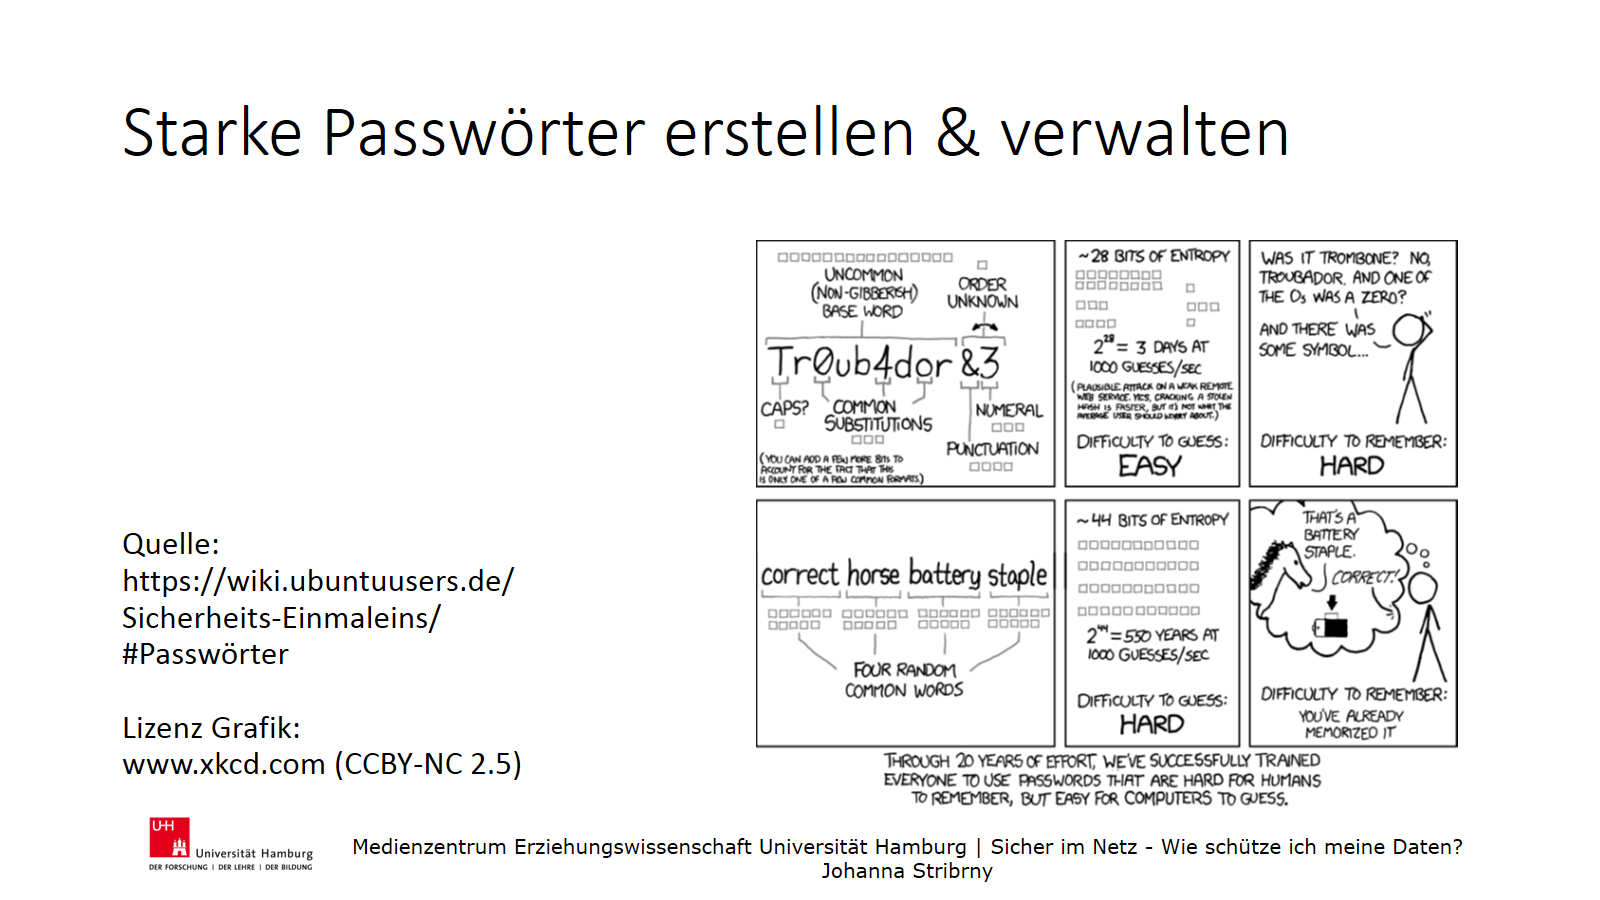 Starke Passwörter erstellen & verwalten | Grafik zum Erstellen von Passwörtern | Quelle:
https://wiki.ubuntuusers.de/
Sicherheits-Einmaleins/#Passwörter
 | Lizenz Grafik: 
www.xkcd.com (CCBY-NC 2.5)
